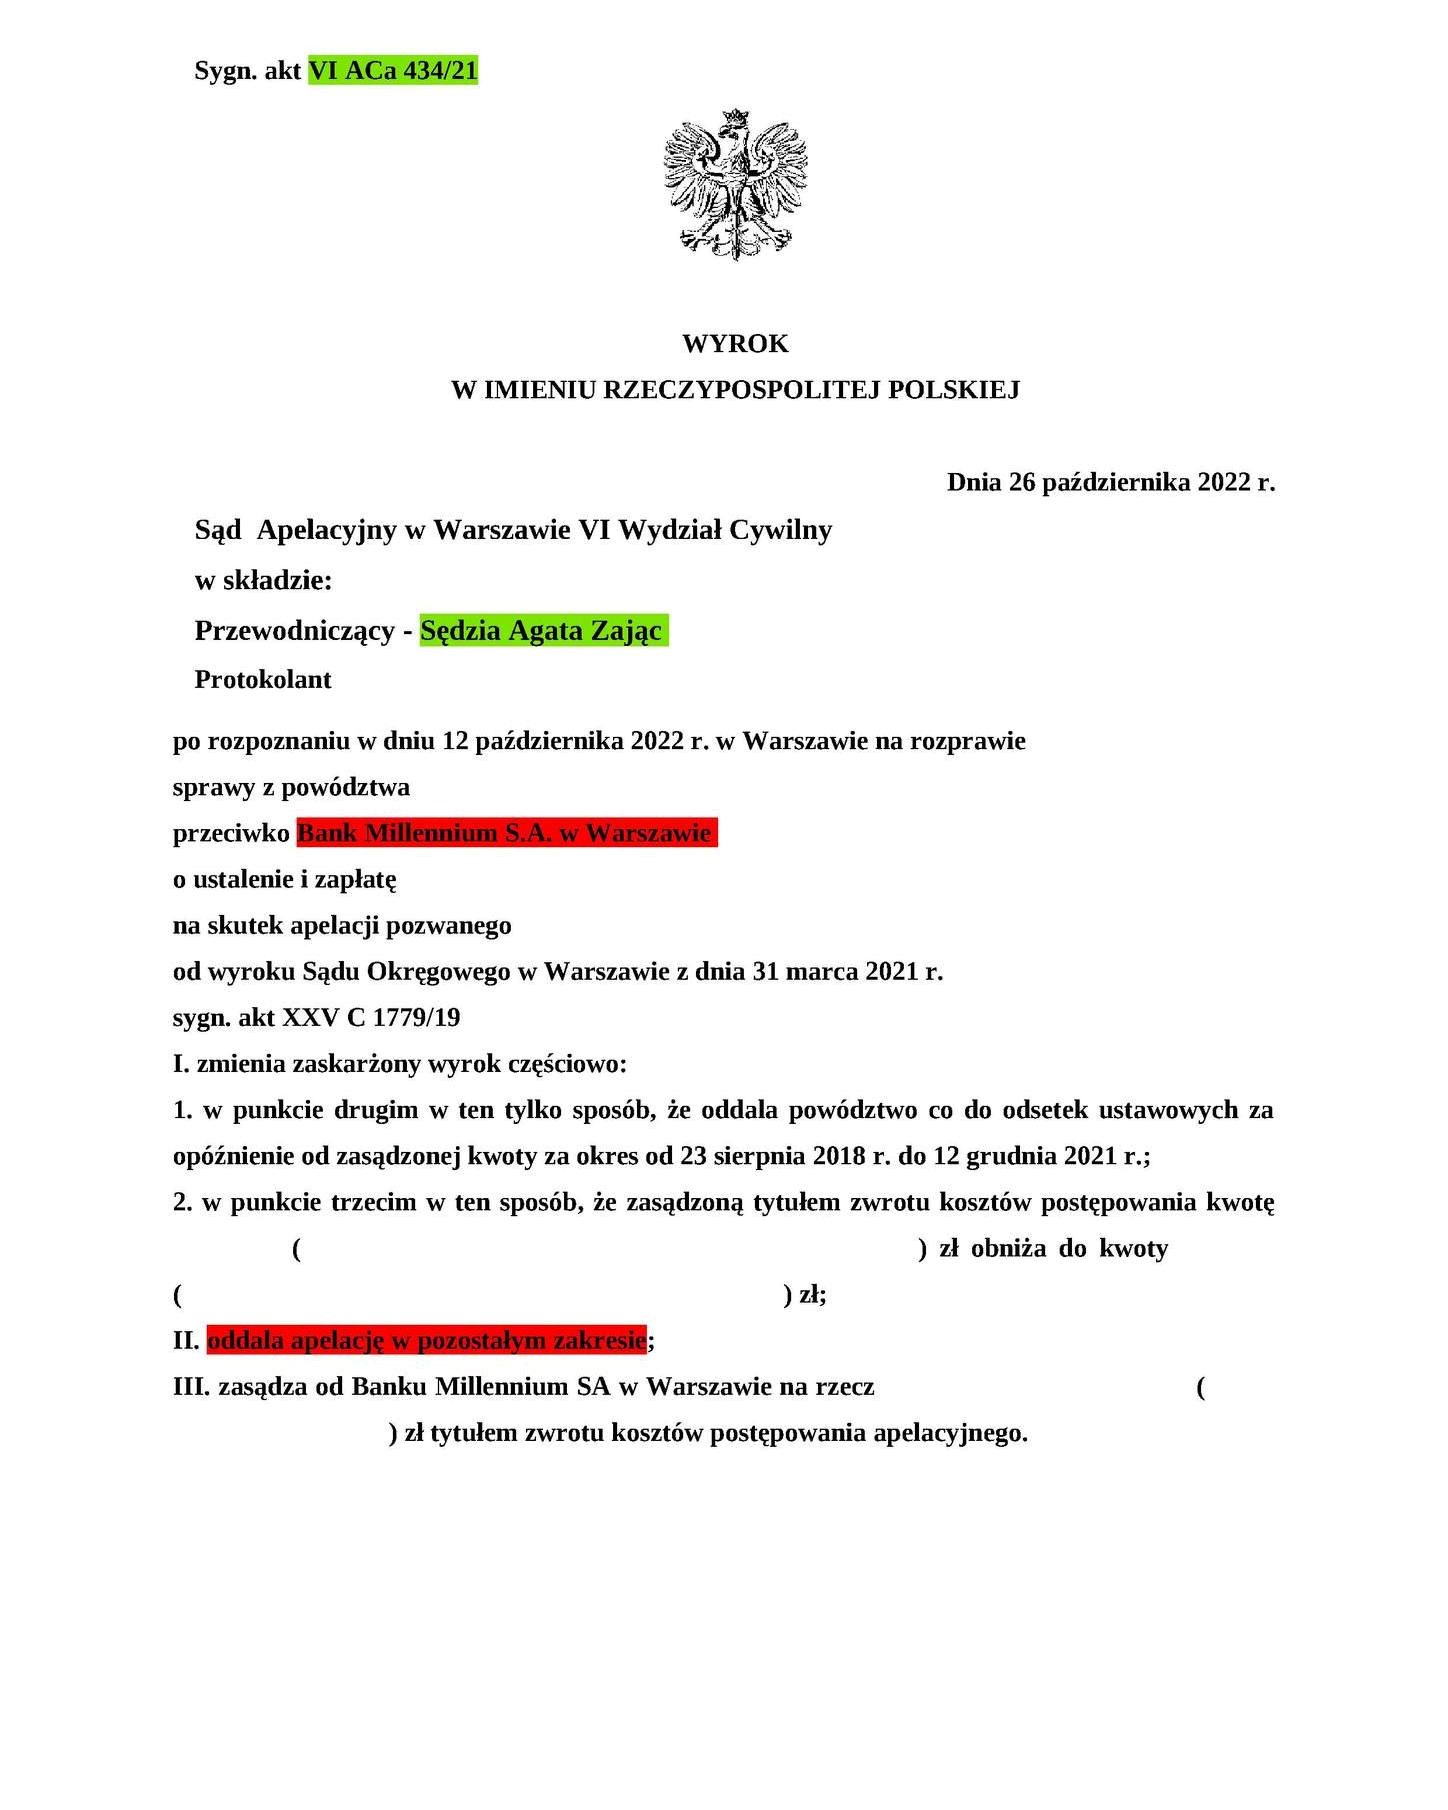 Wyrok Sądu Apelacyjnego w Warszawie z dnia 26.10.2022 r., sygn. akt VI ACa 434/21